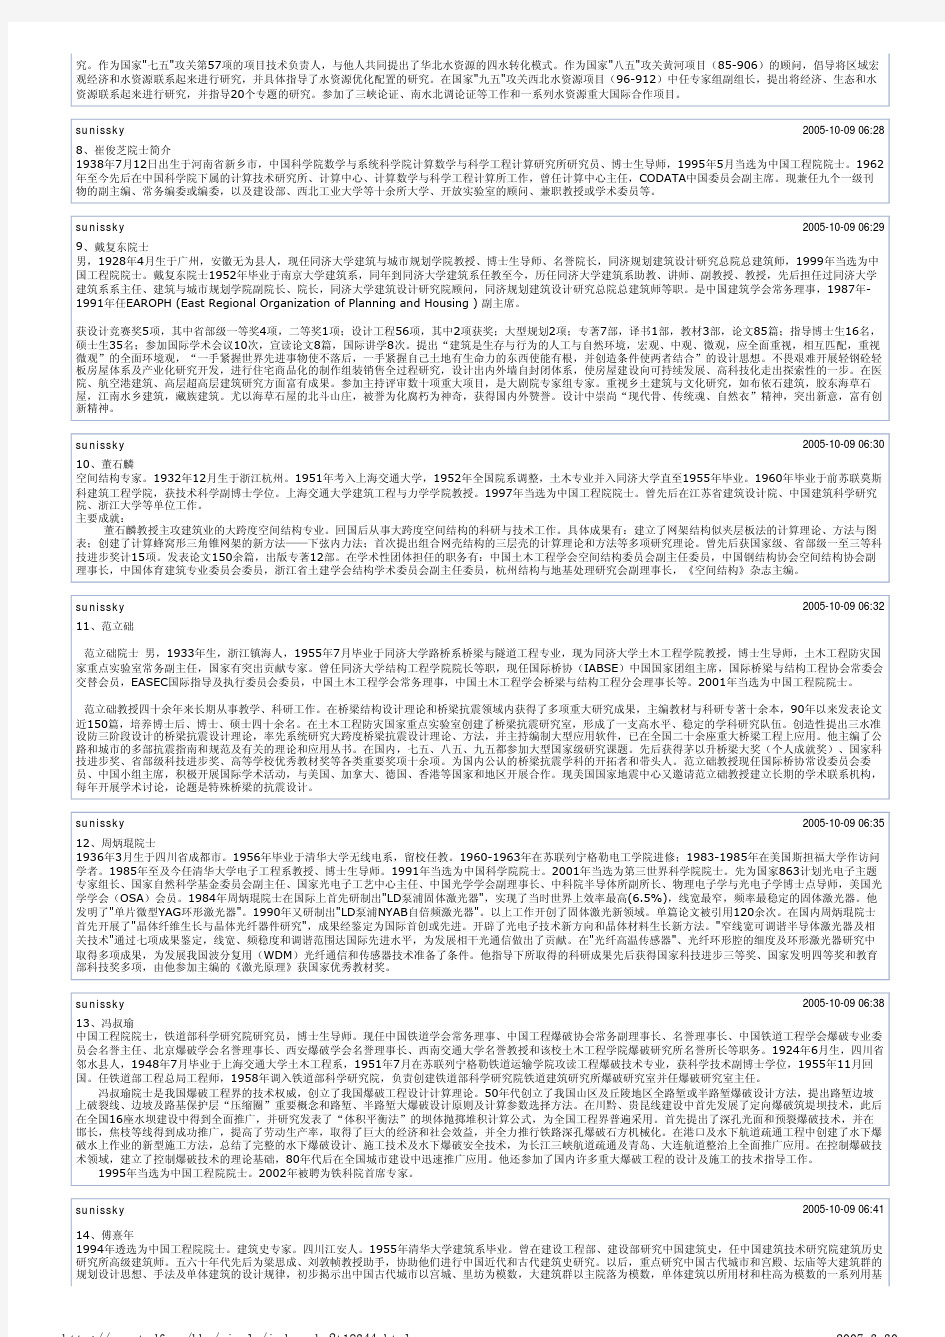 中国工程院(土木、水利与建筑工程学部)院士简 - 页码,1_12 【分享 ...